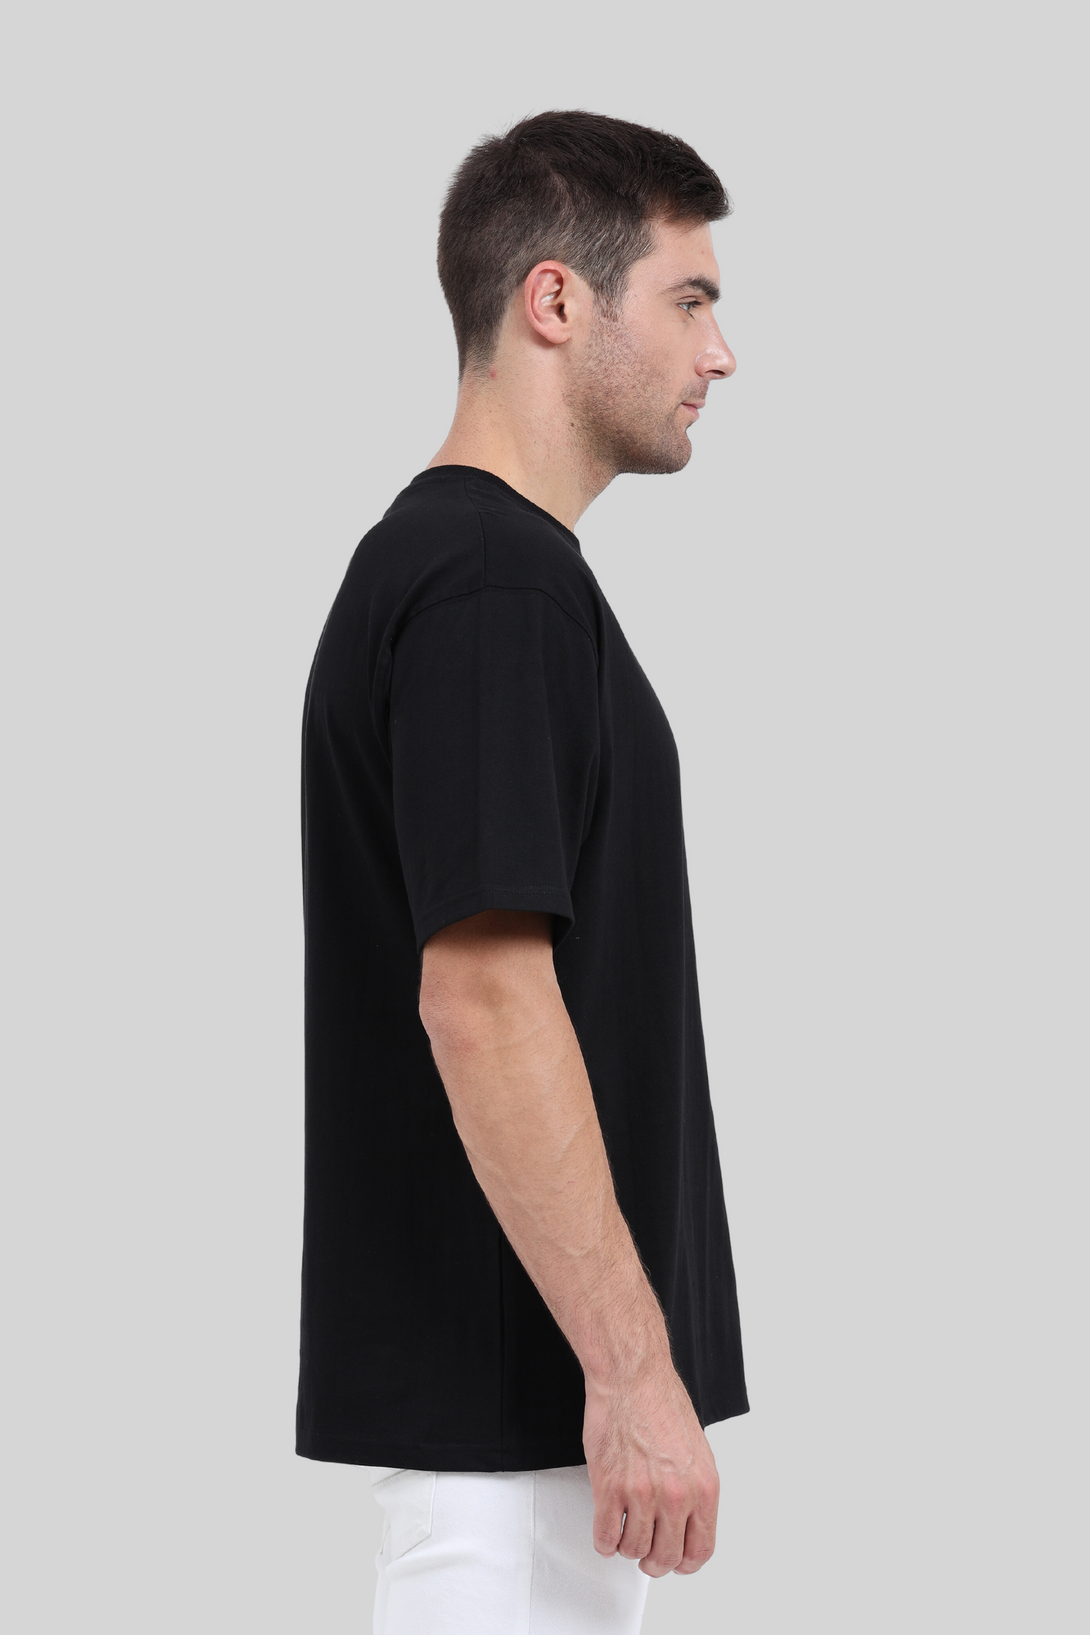 Black Oversized T-Shirt For Men - WowWaves - 4